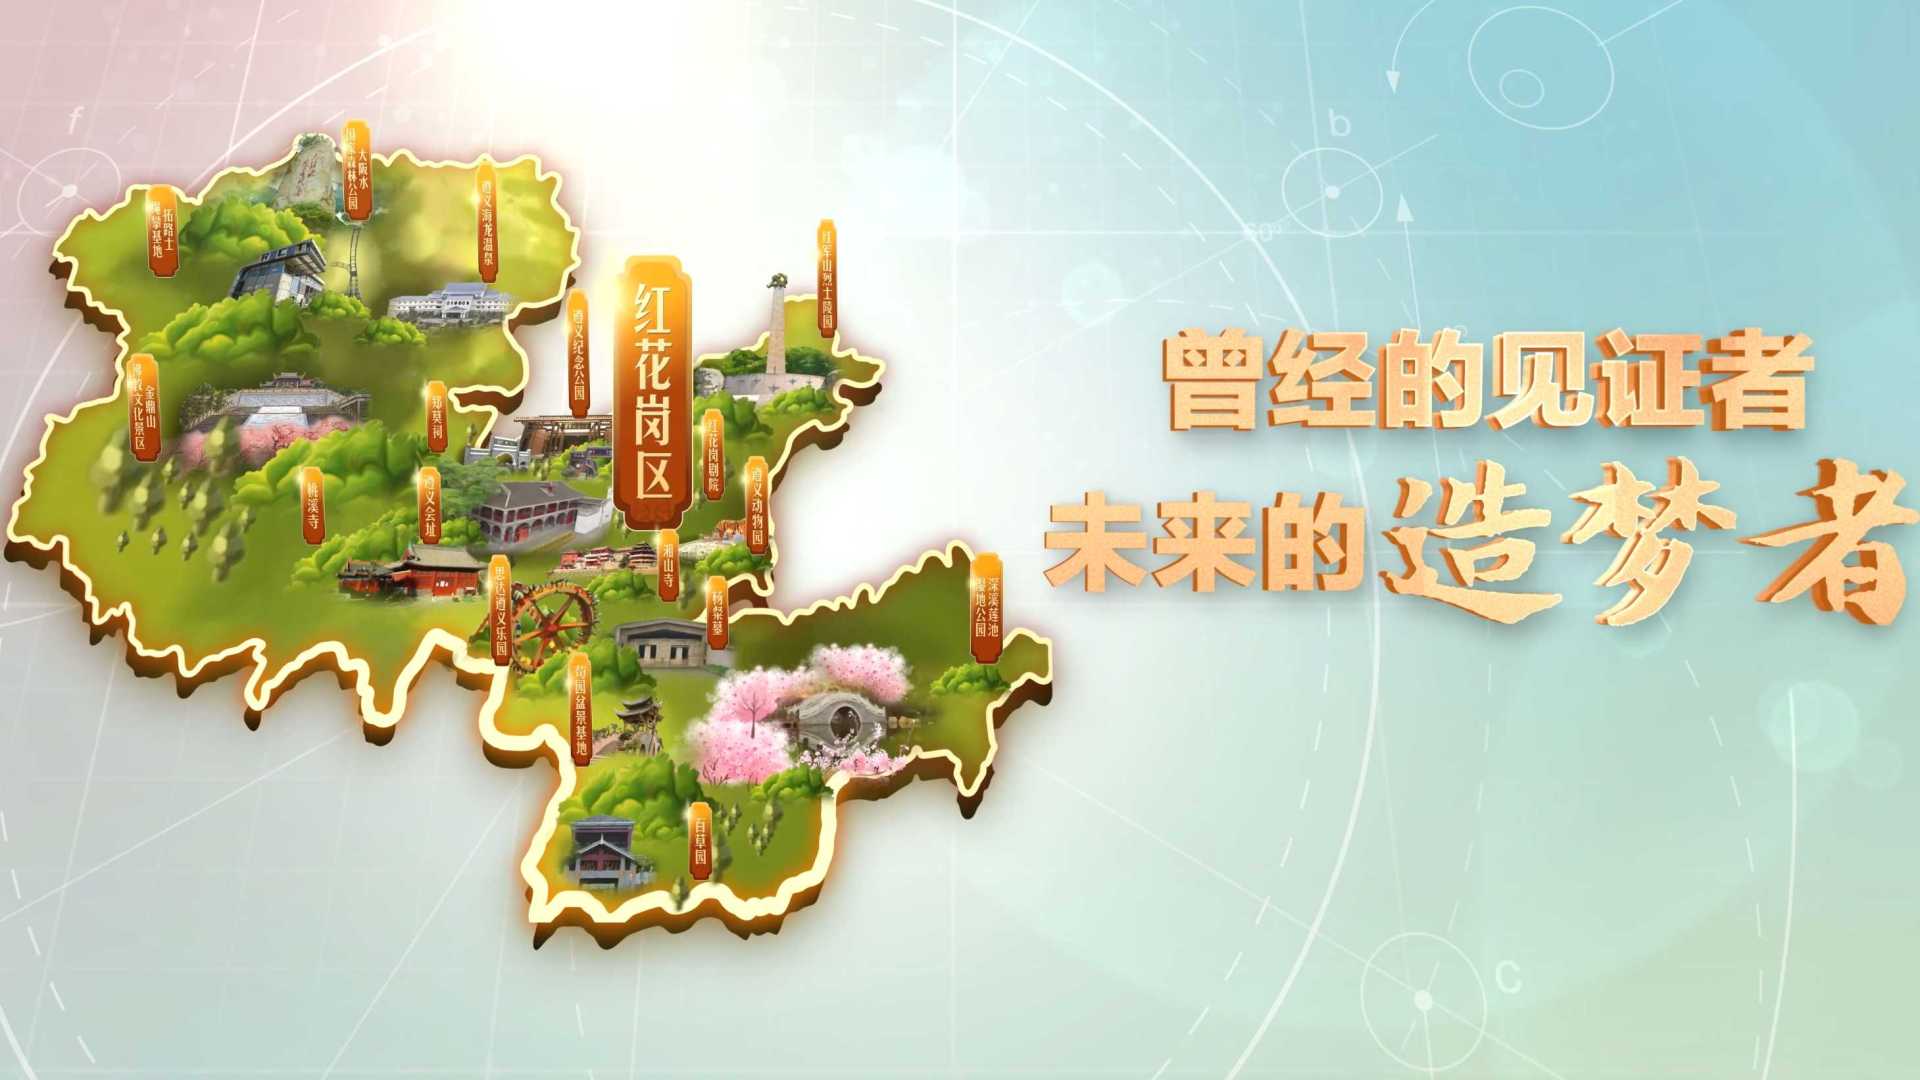 #城市品牌宣传片  贵州省红花岗区文化和旅游宣传片